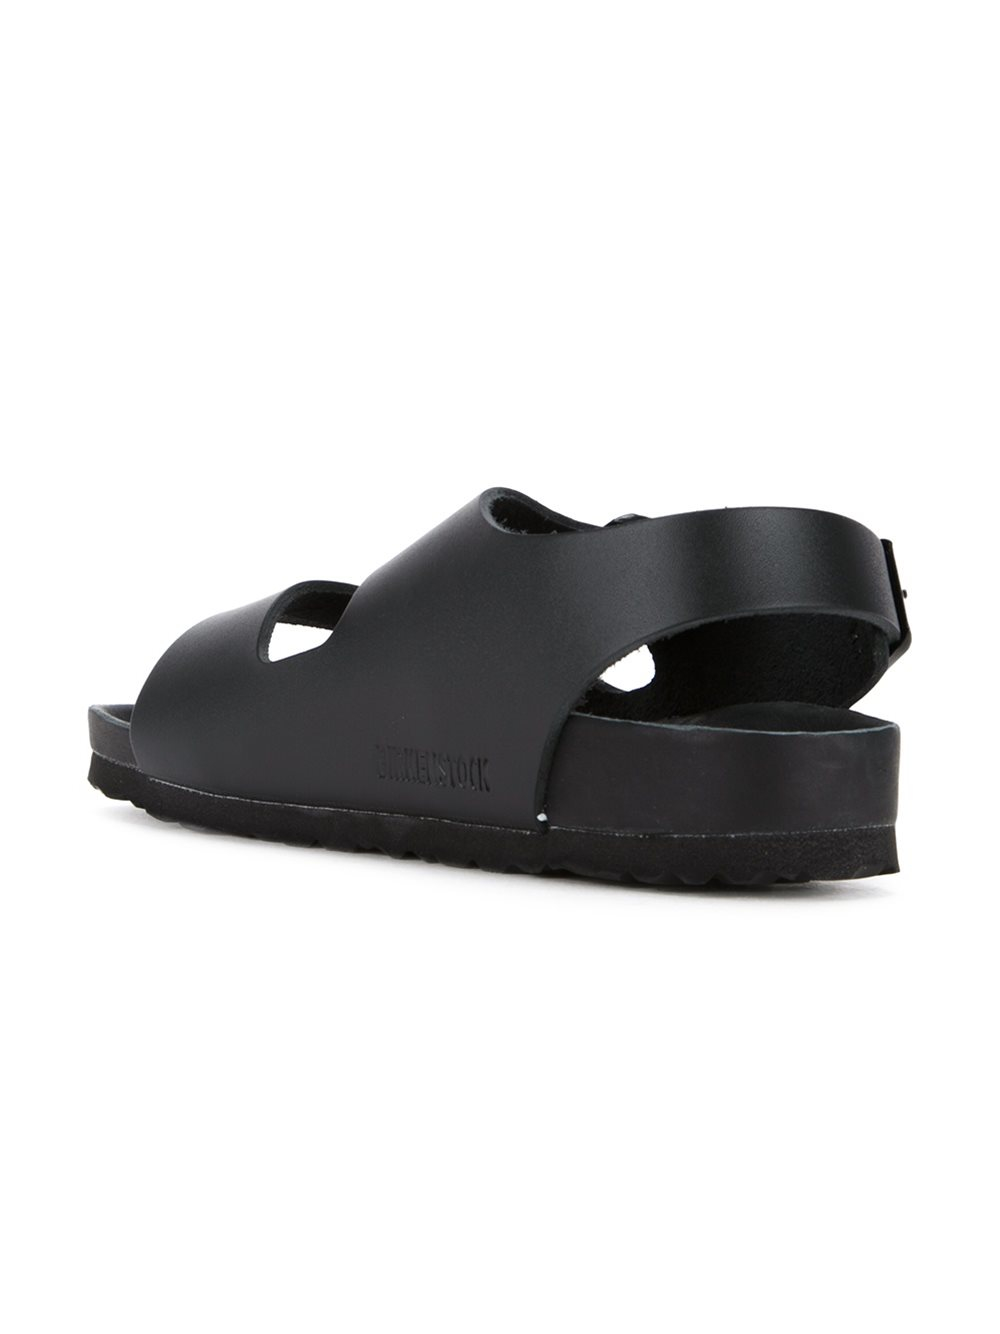 Birkenstock Leather 'milano Exquisite' Sandals in Black | Lyst